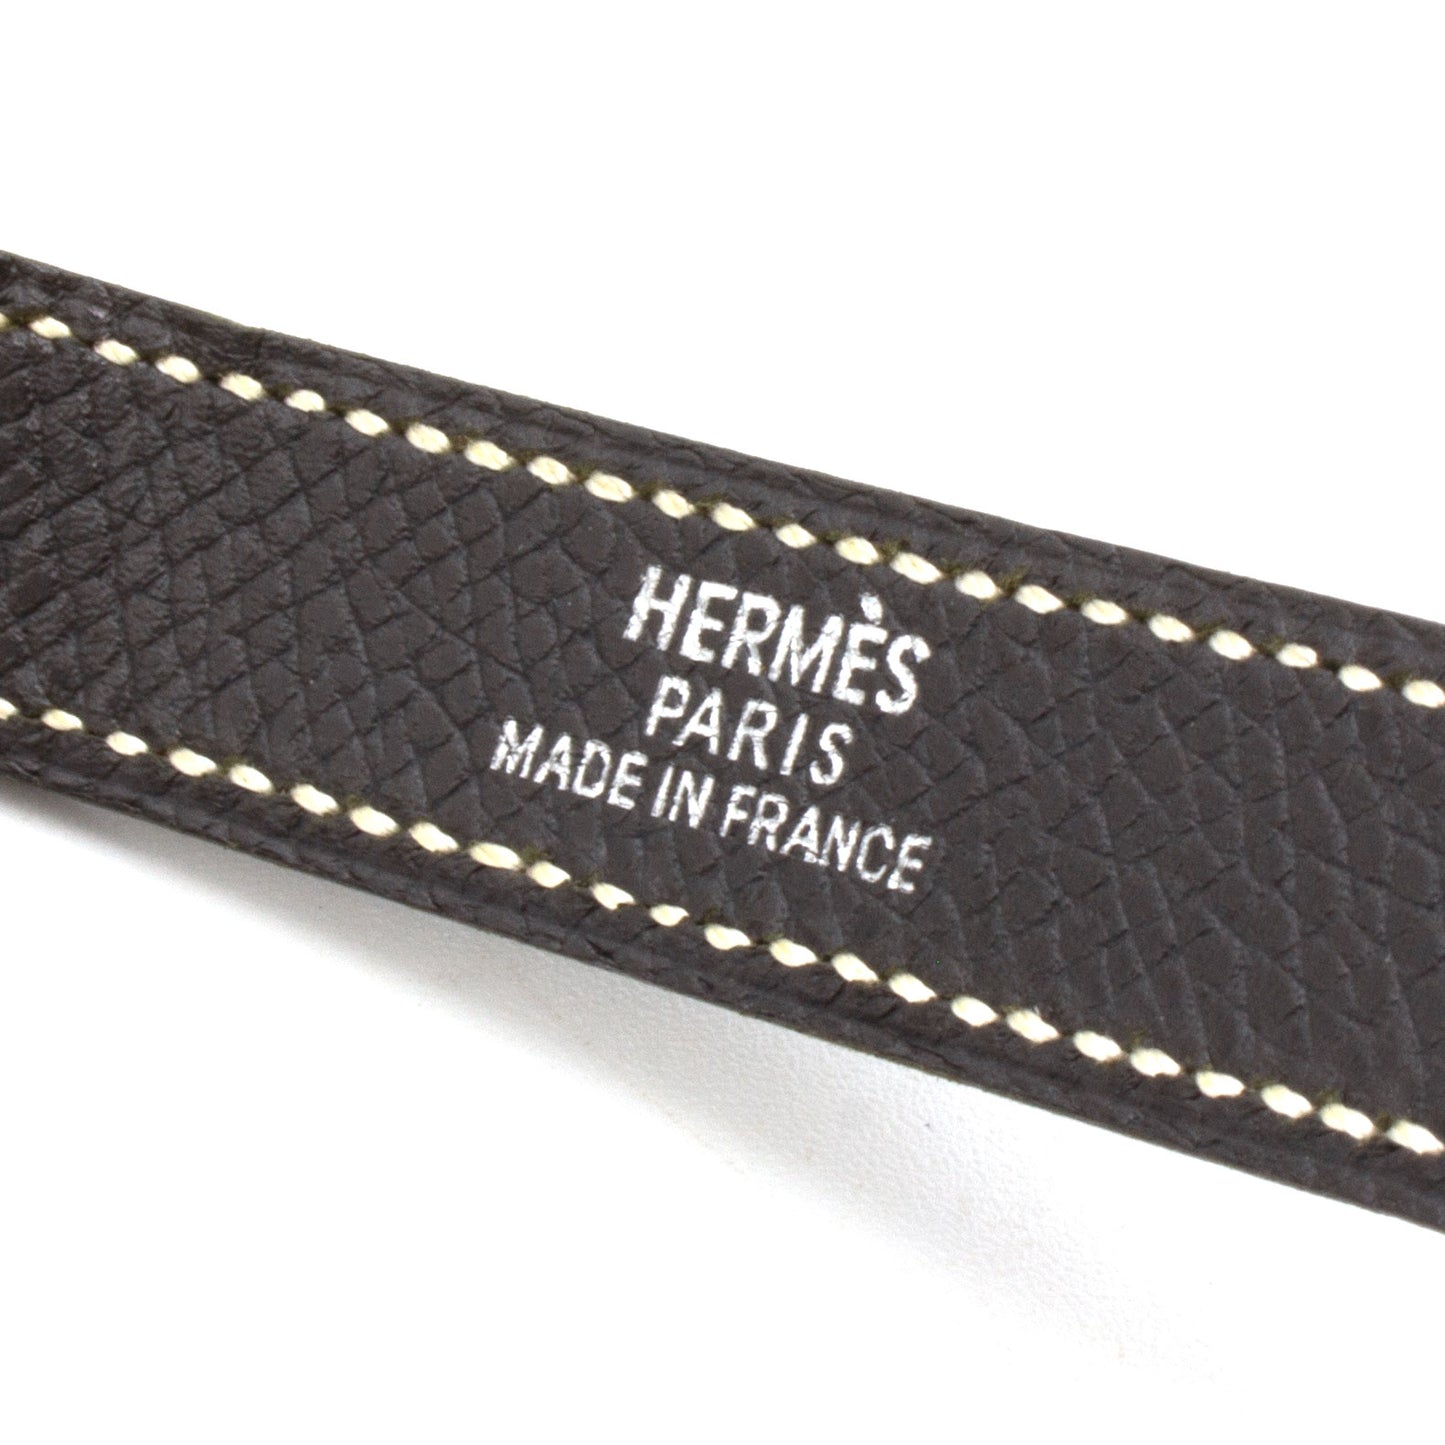 Hermès Double Tour bracelet